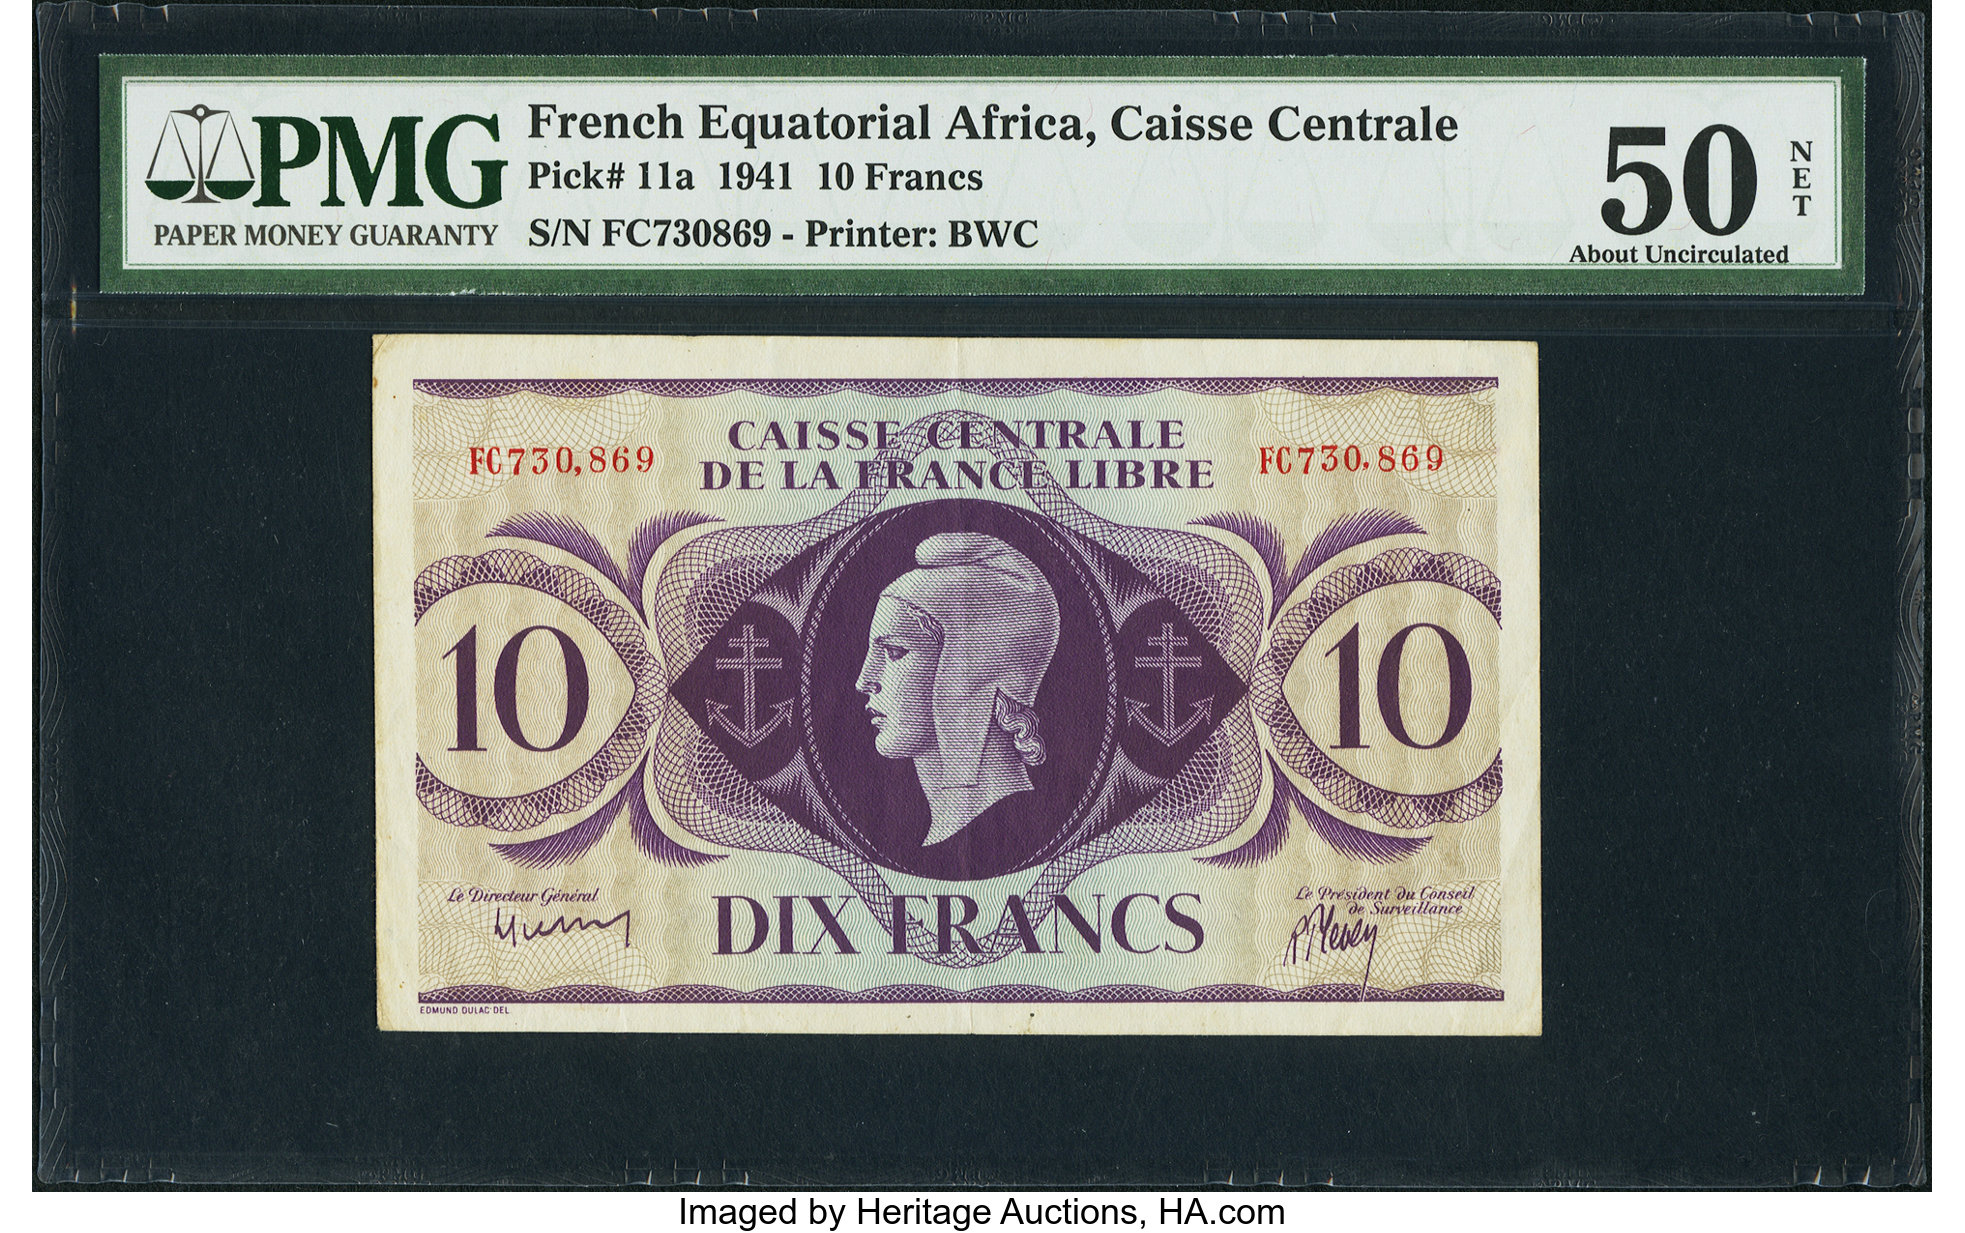 Caisse Pennyrale de la France Libre 10 francs B302a,P11 2 DEC 1941 